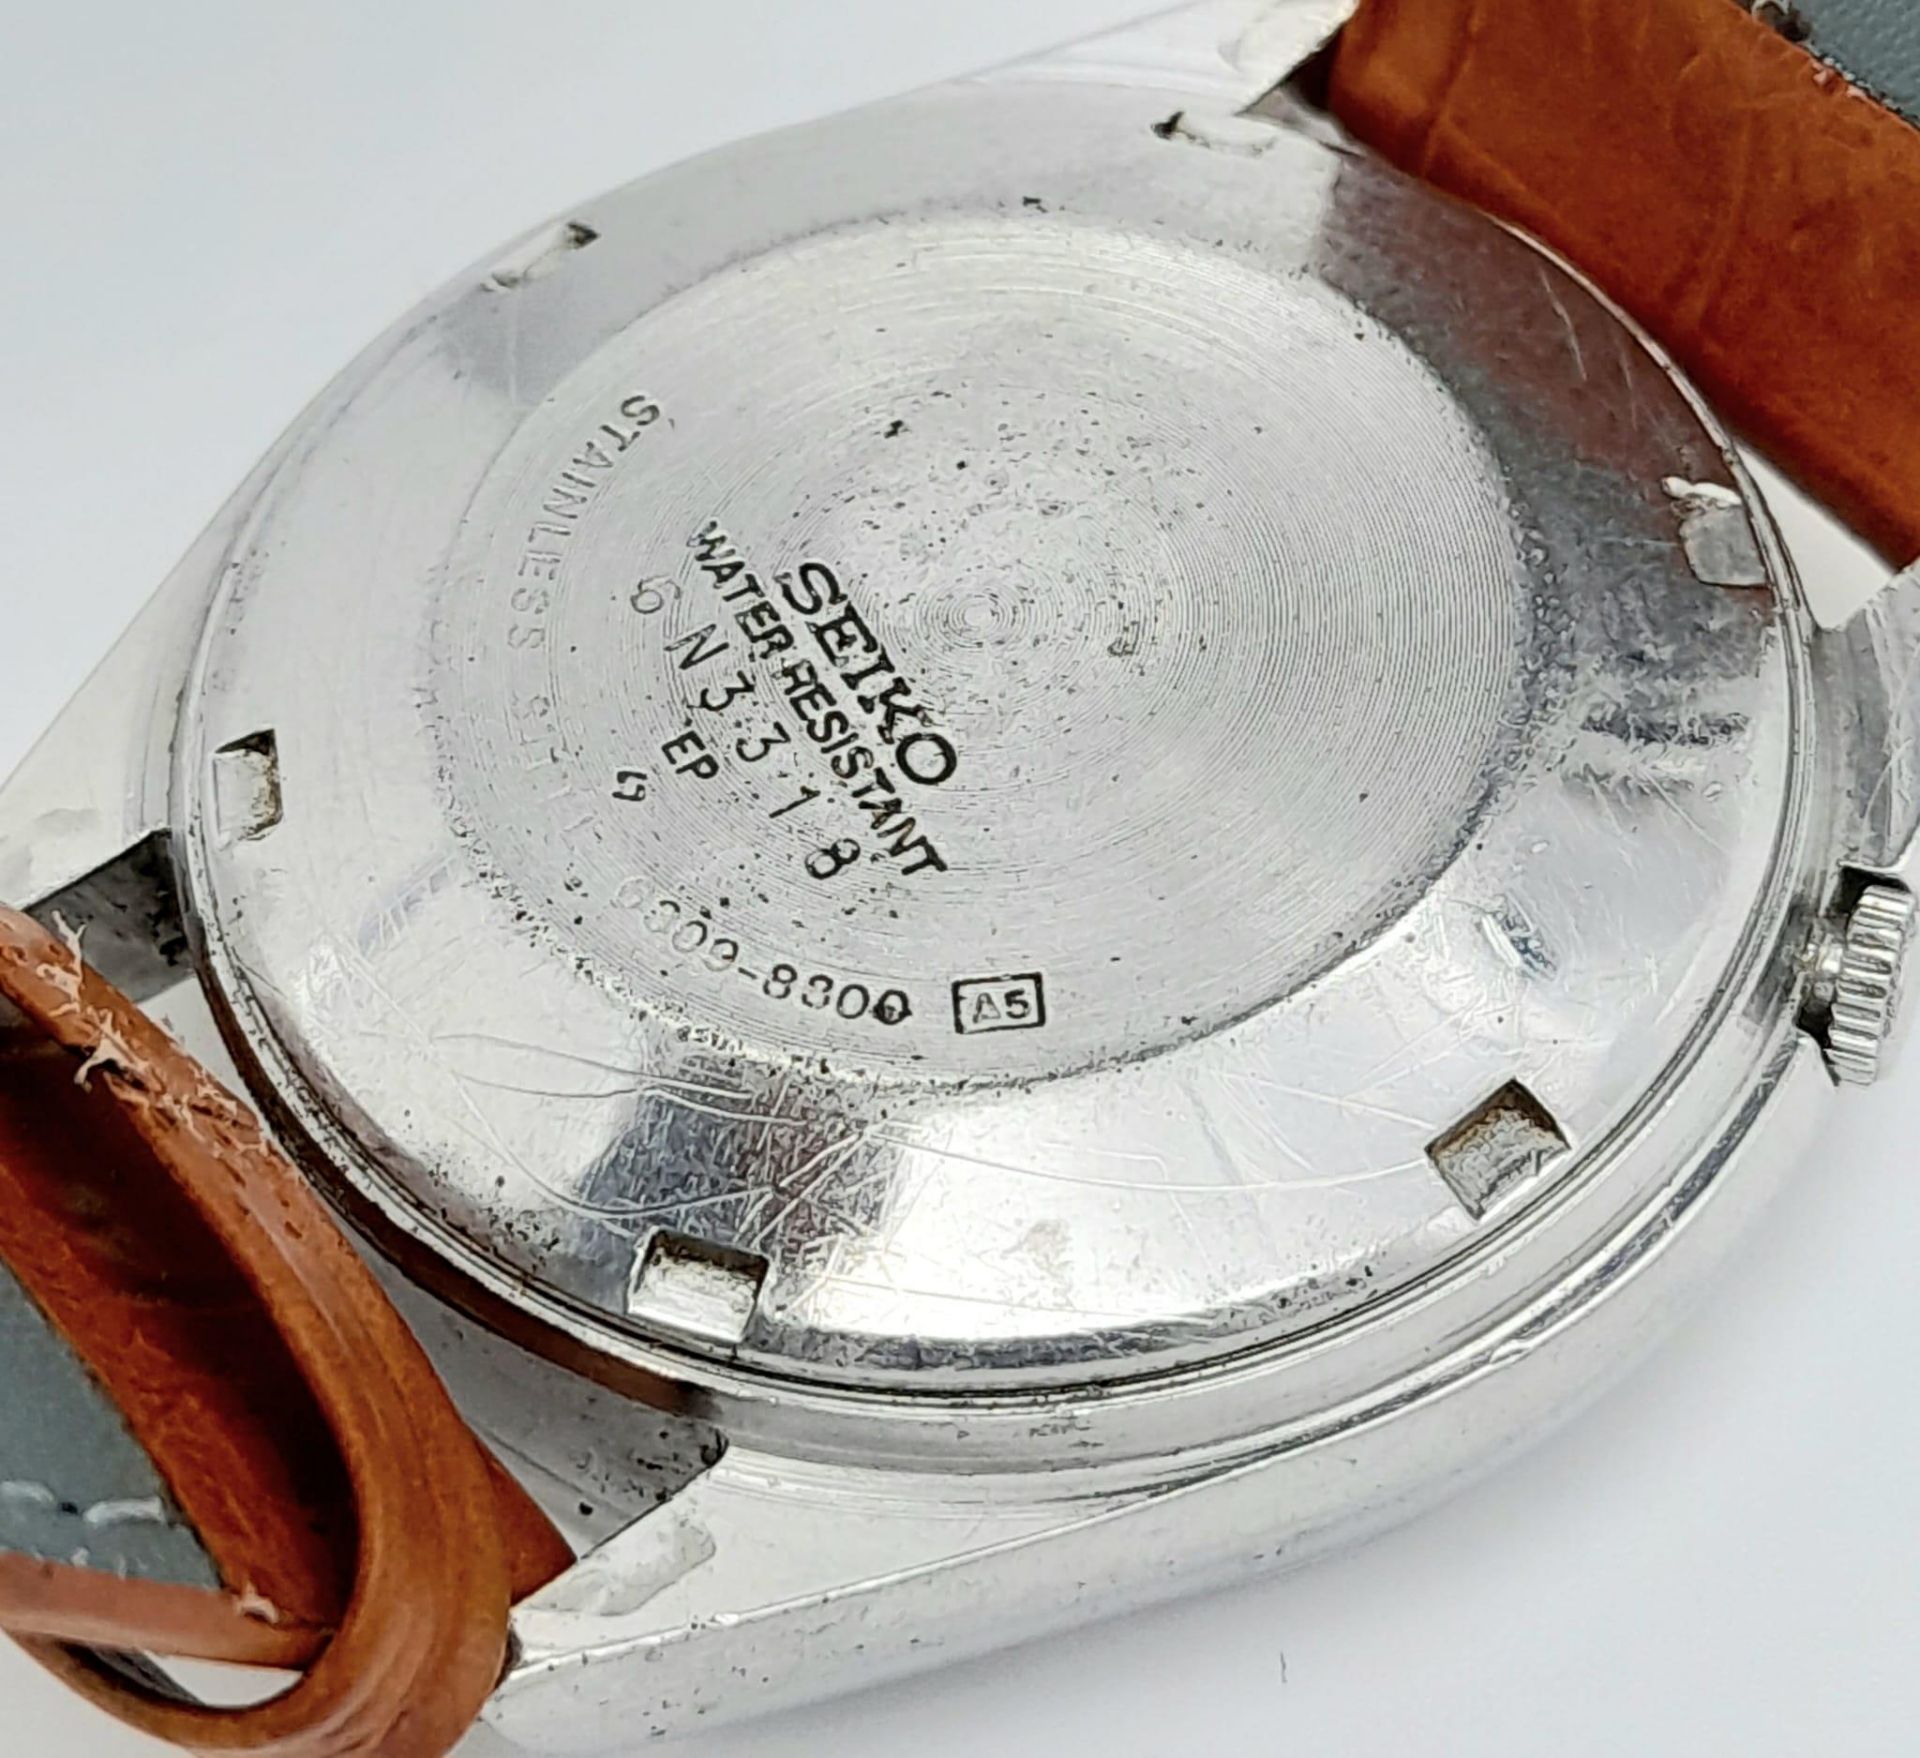 A Vintage Seiko 5 Automatic Gents Watch. Brown leather strap. Stainless steel case - 36mm. Dark grey - Bild 8 aus 11